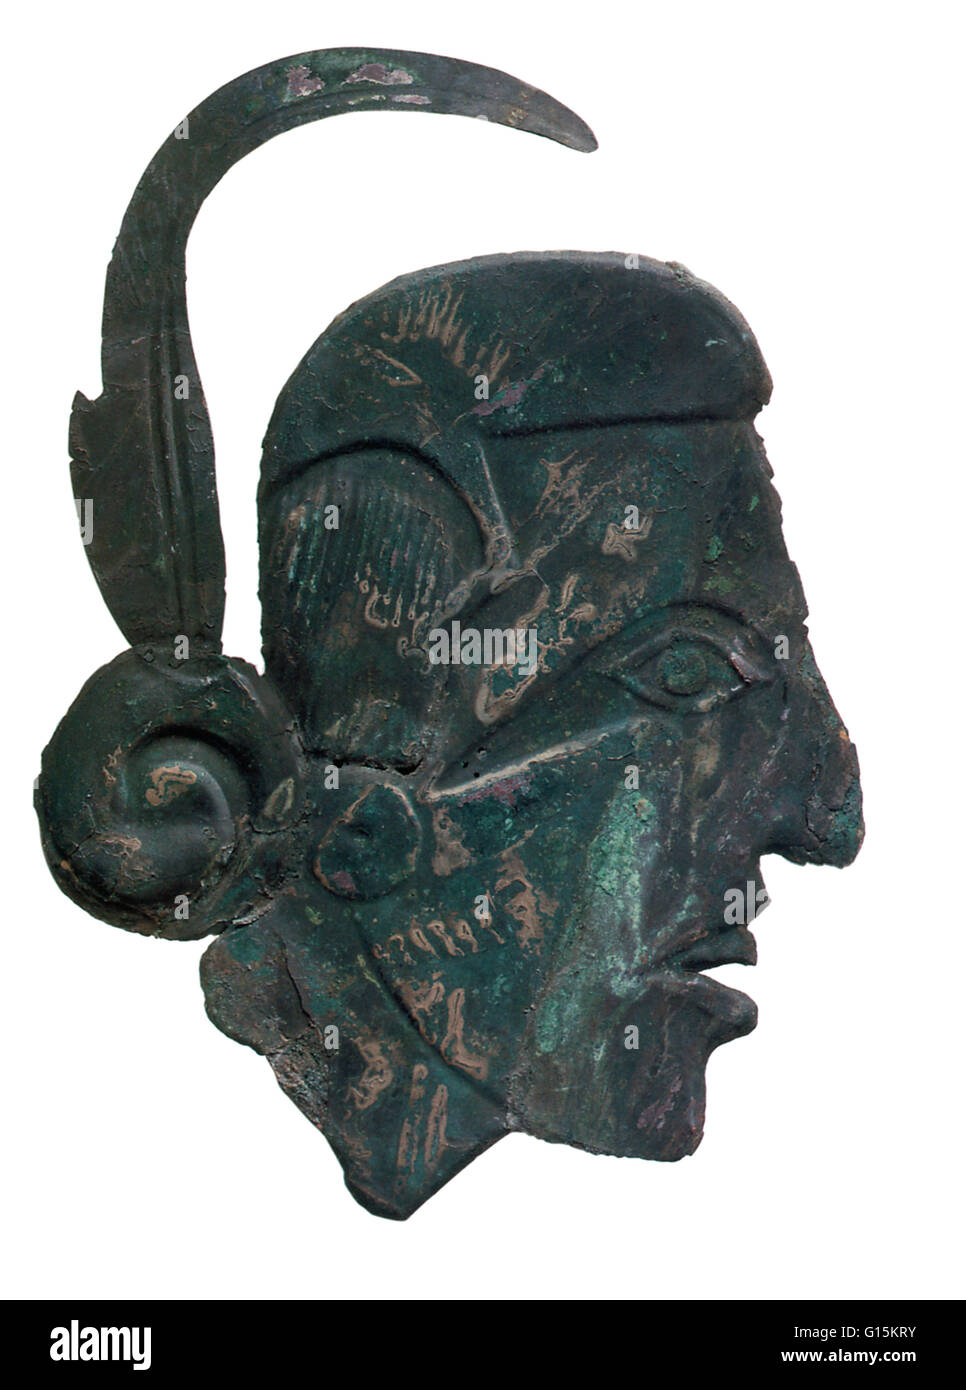 Mississipian ornement cuivre représentant un guerrier en relief, trouvé à Craig, à la Spiro Mounds site archéologique dans l'Oklahoma. Le site a été une colonie permanente à partir de l'an 800 à 1450 AD. Banque D'Images